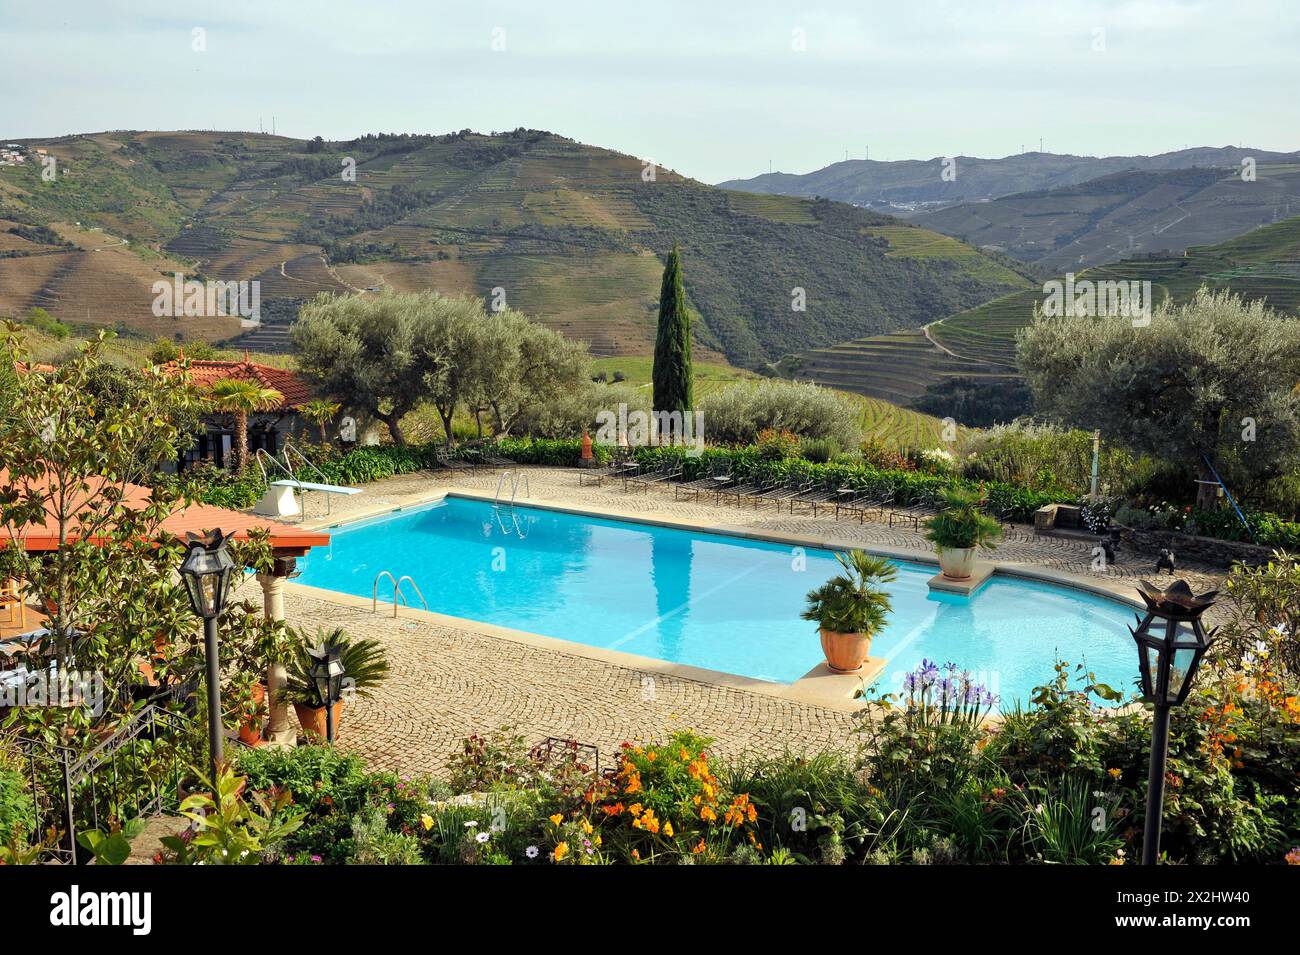 Swimmingpool im Hotel mit Blick auf die terrassenförmig angelegten Hügel in der Weinregion Douro Valley in Portugal, Europa Stockfoto